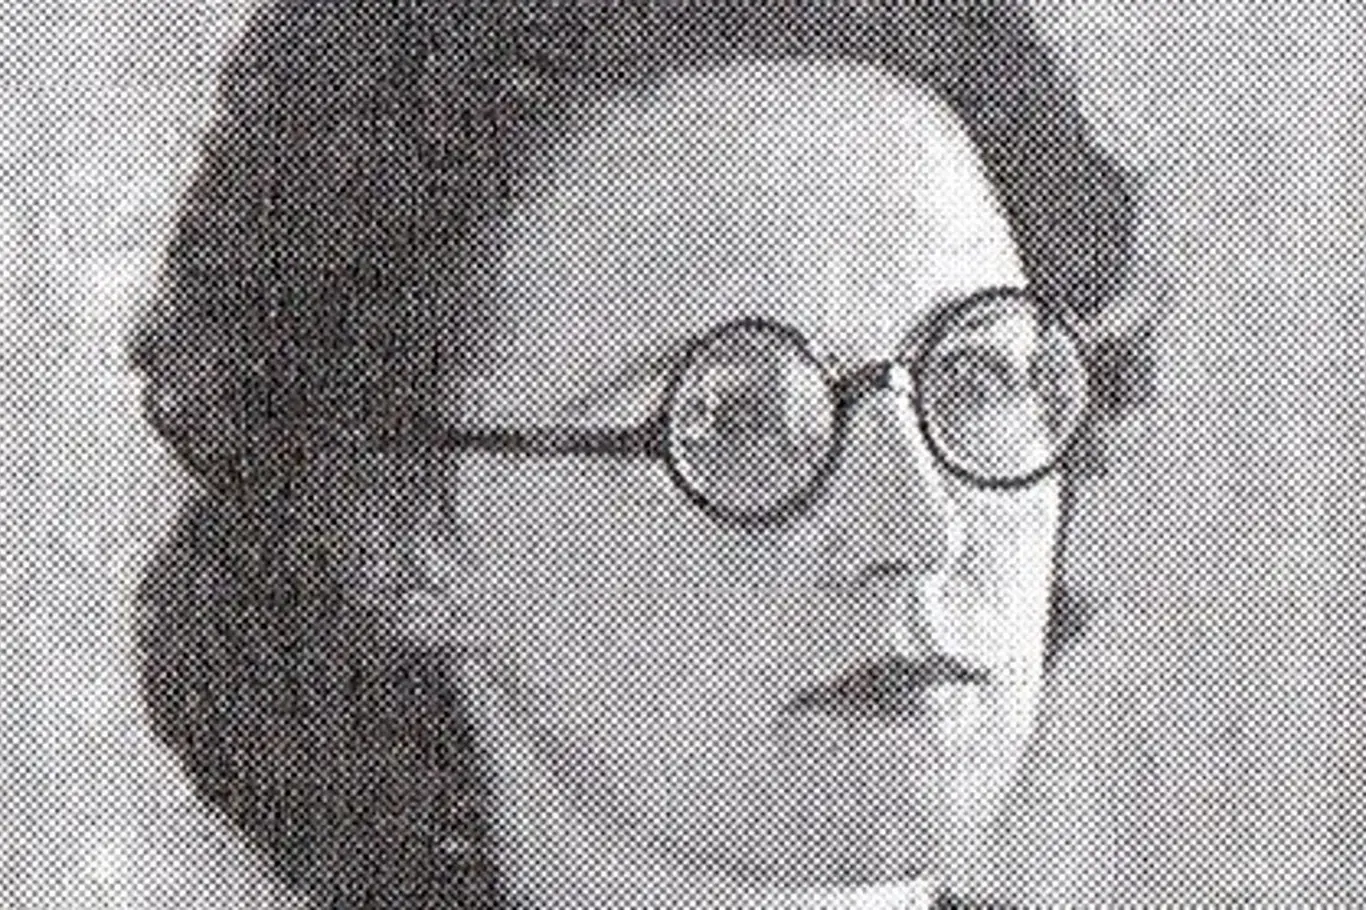 Irena Bernášková